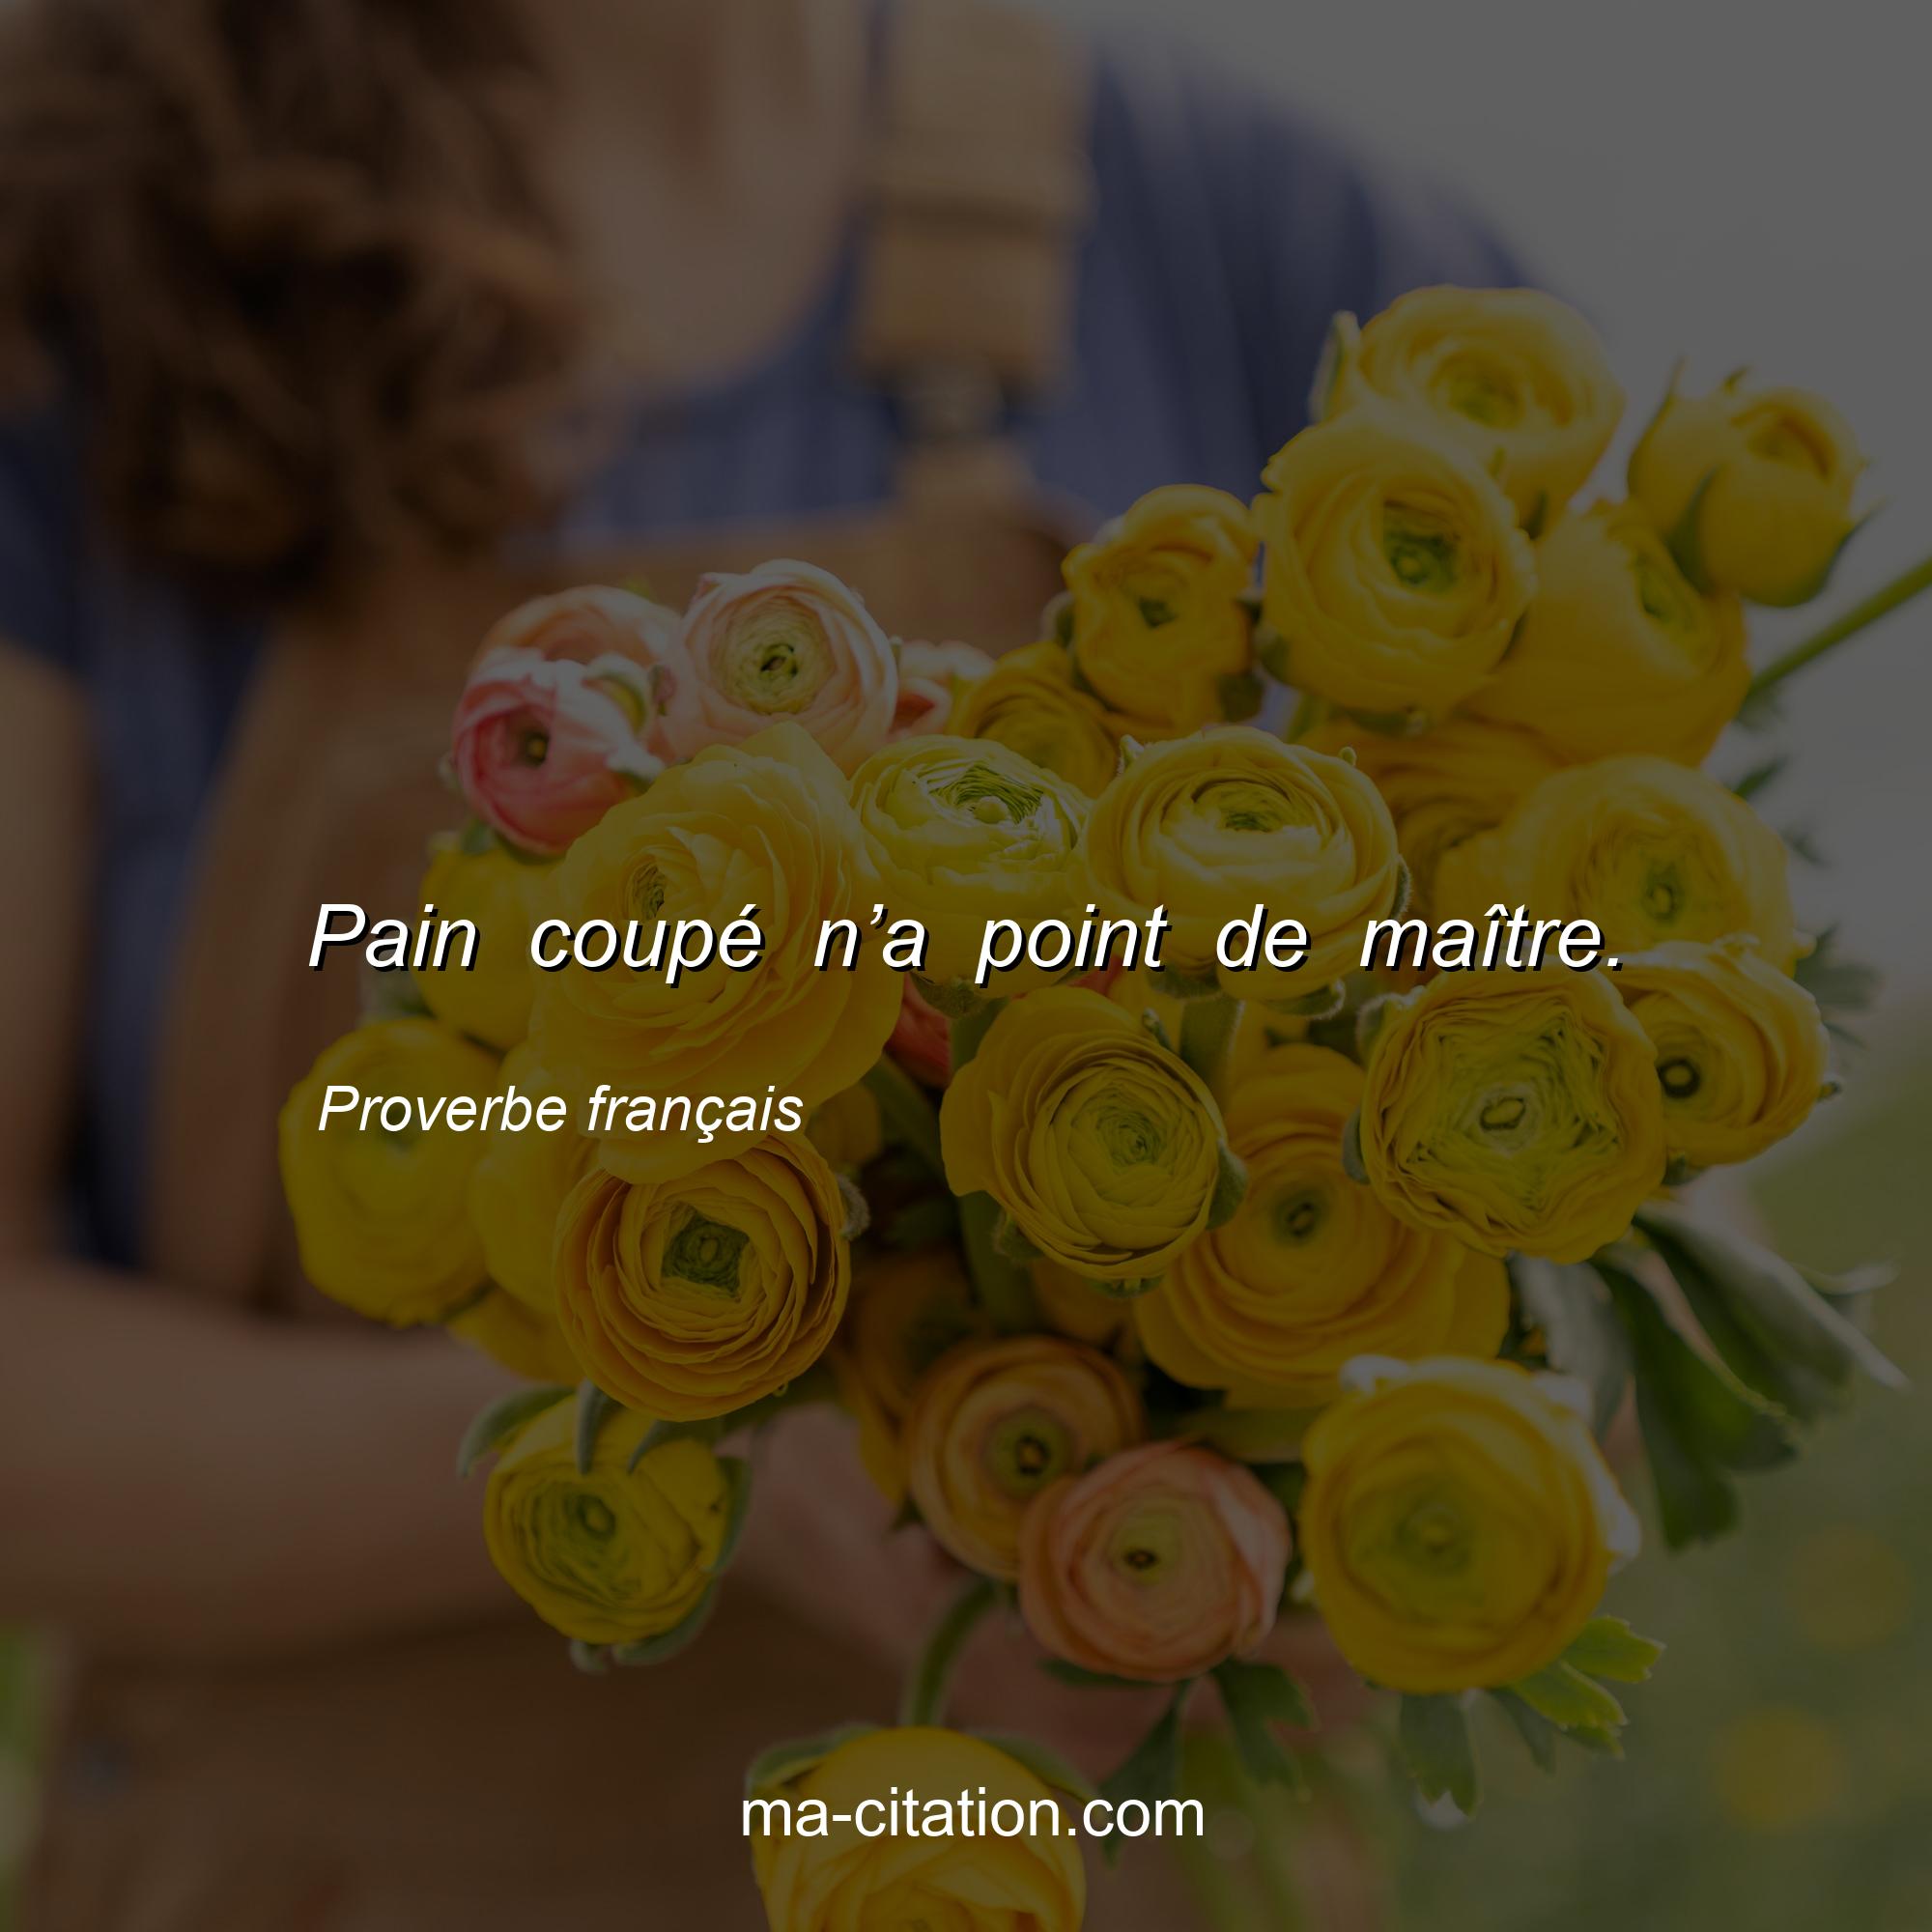 Proverbe français : Pain coupé n’a point de maître.